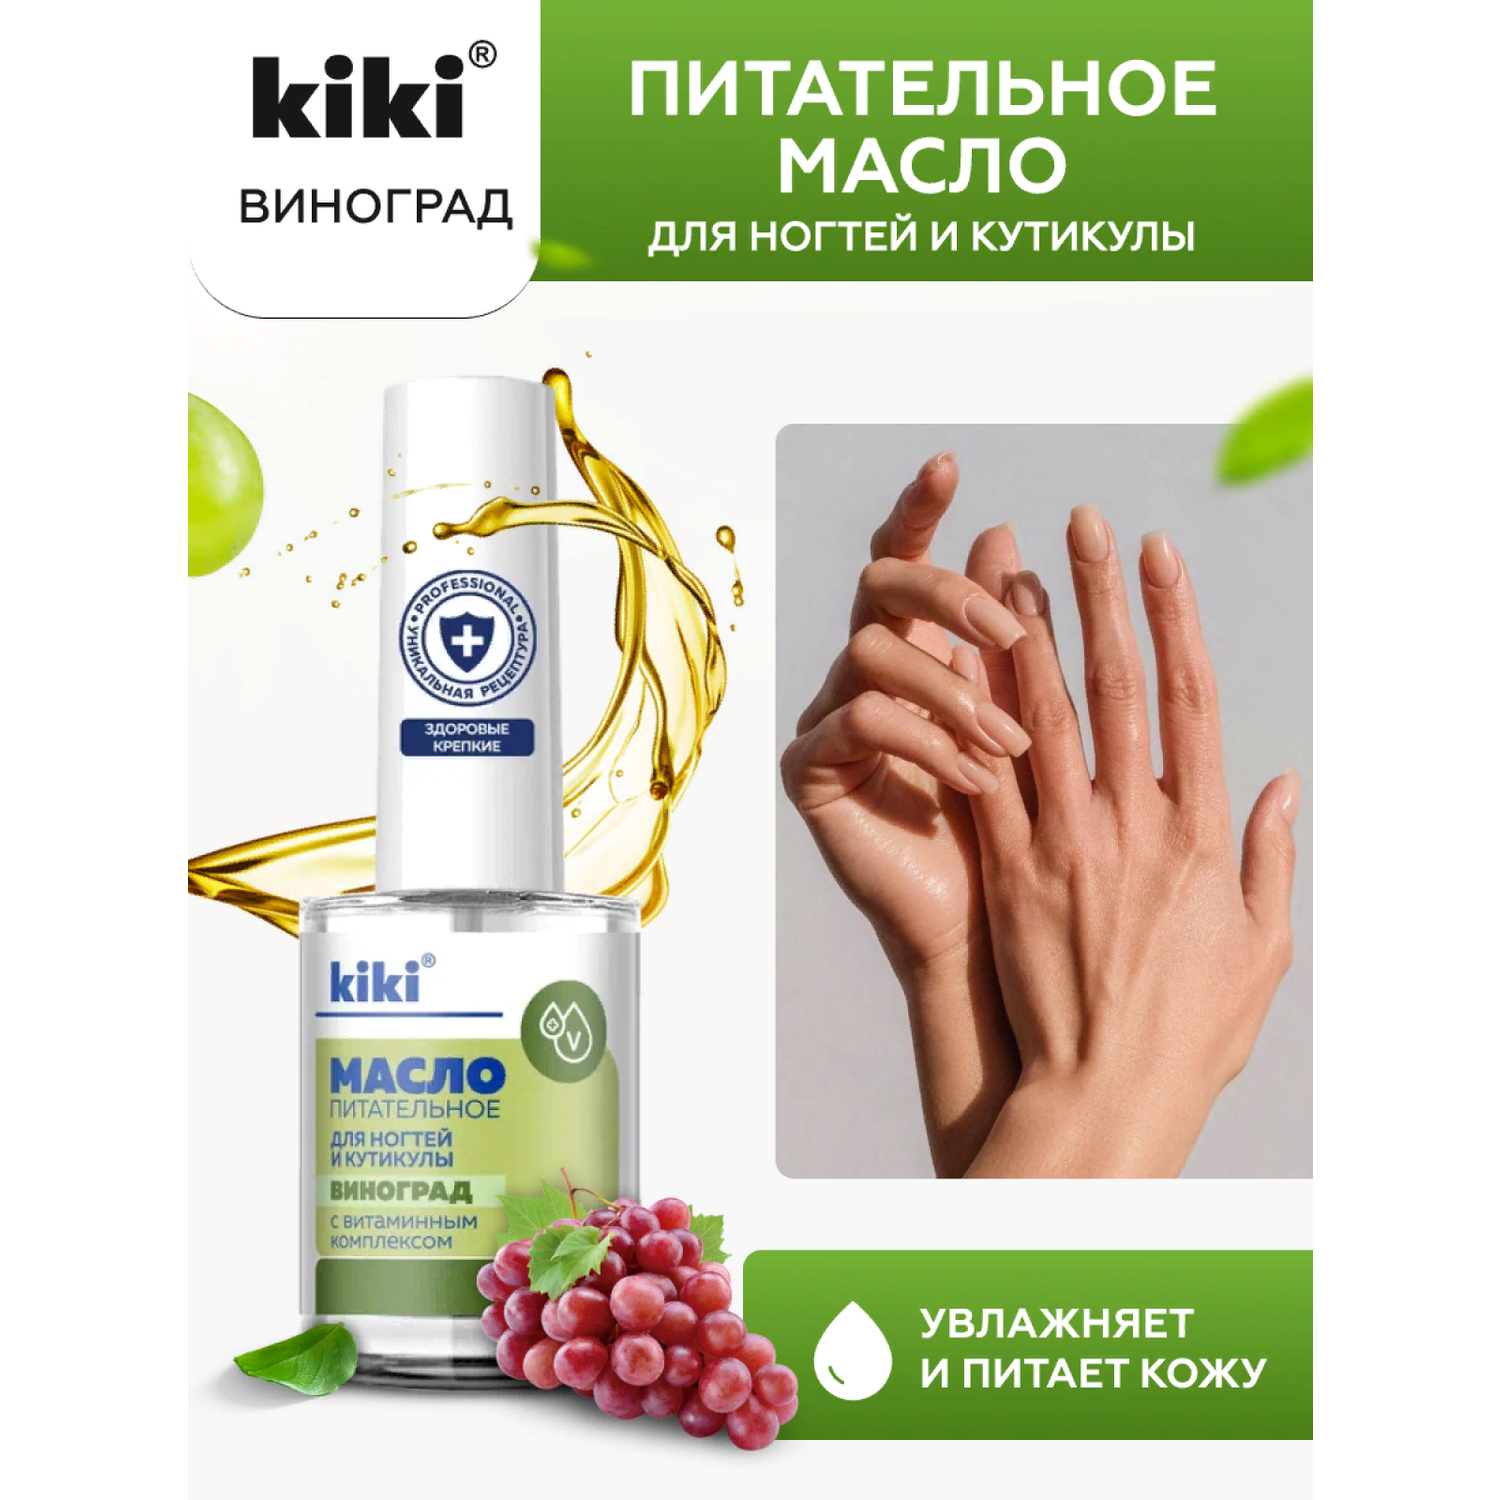 Масло для ногтей и кутикулы KIKI с маслом виноградной косточки и витаминным комплексом - фото 1